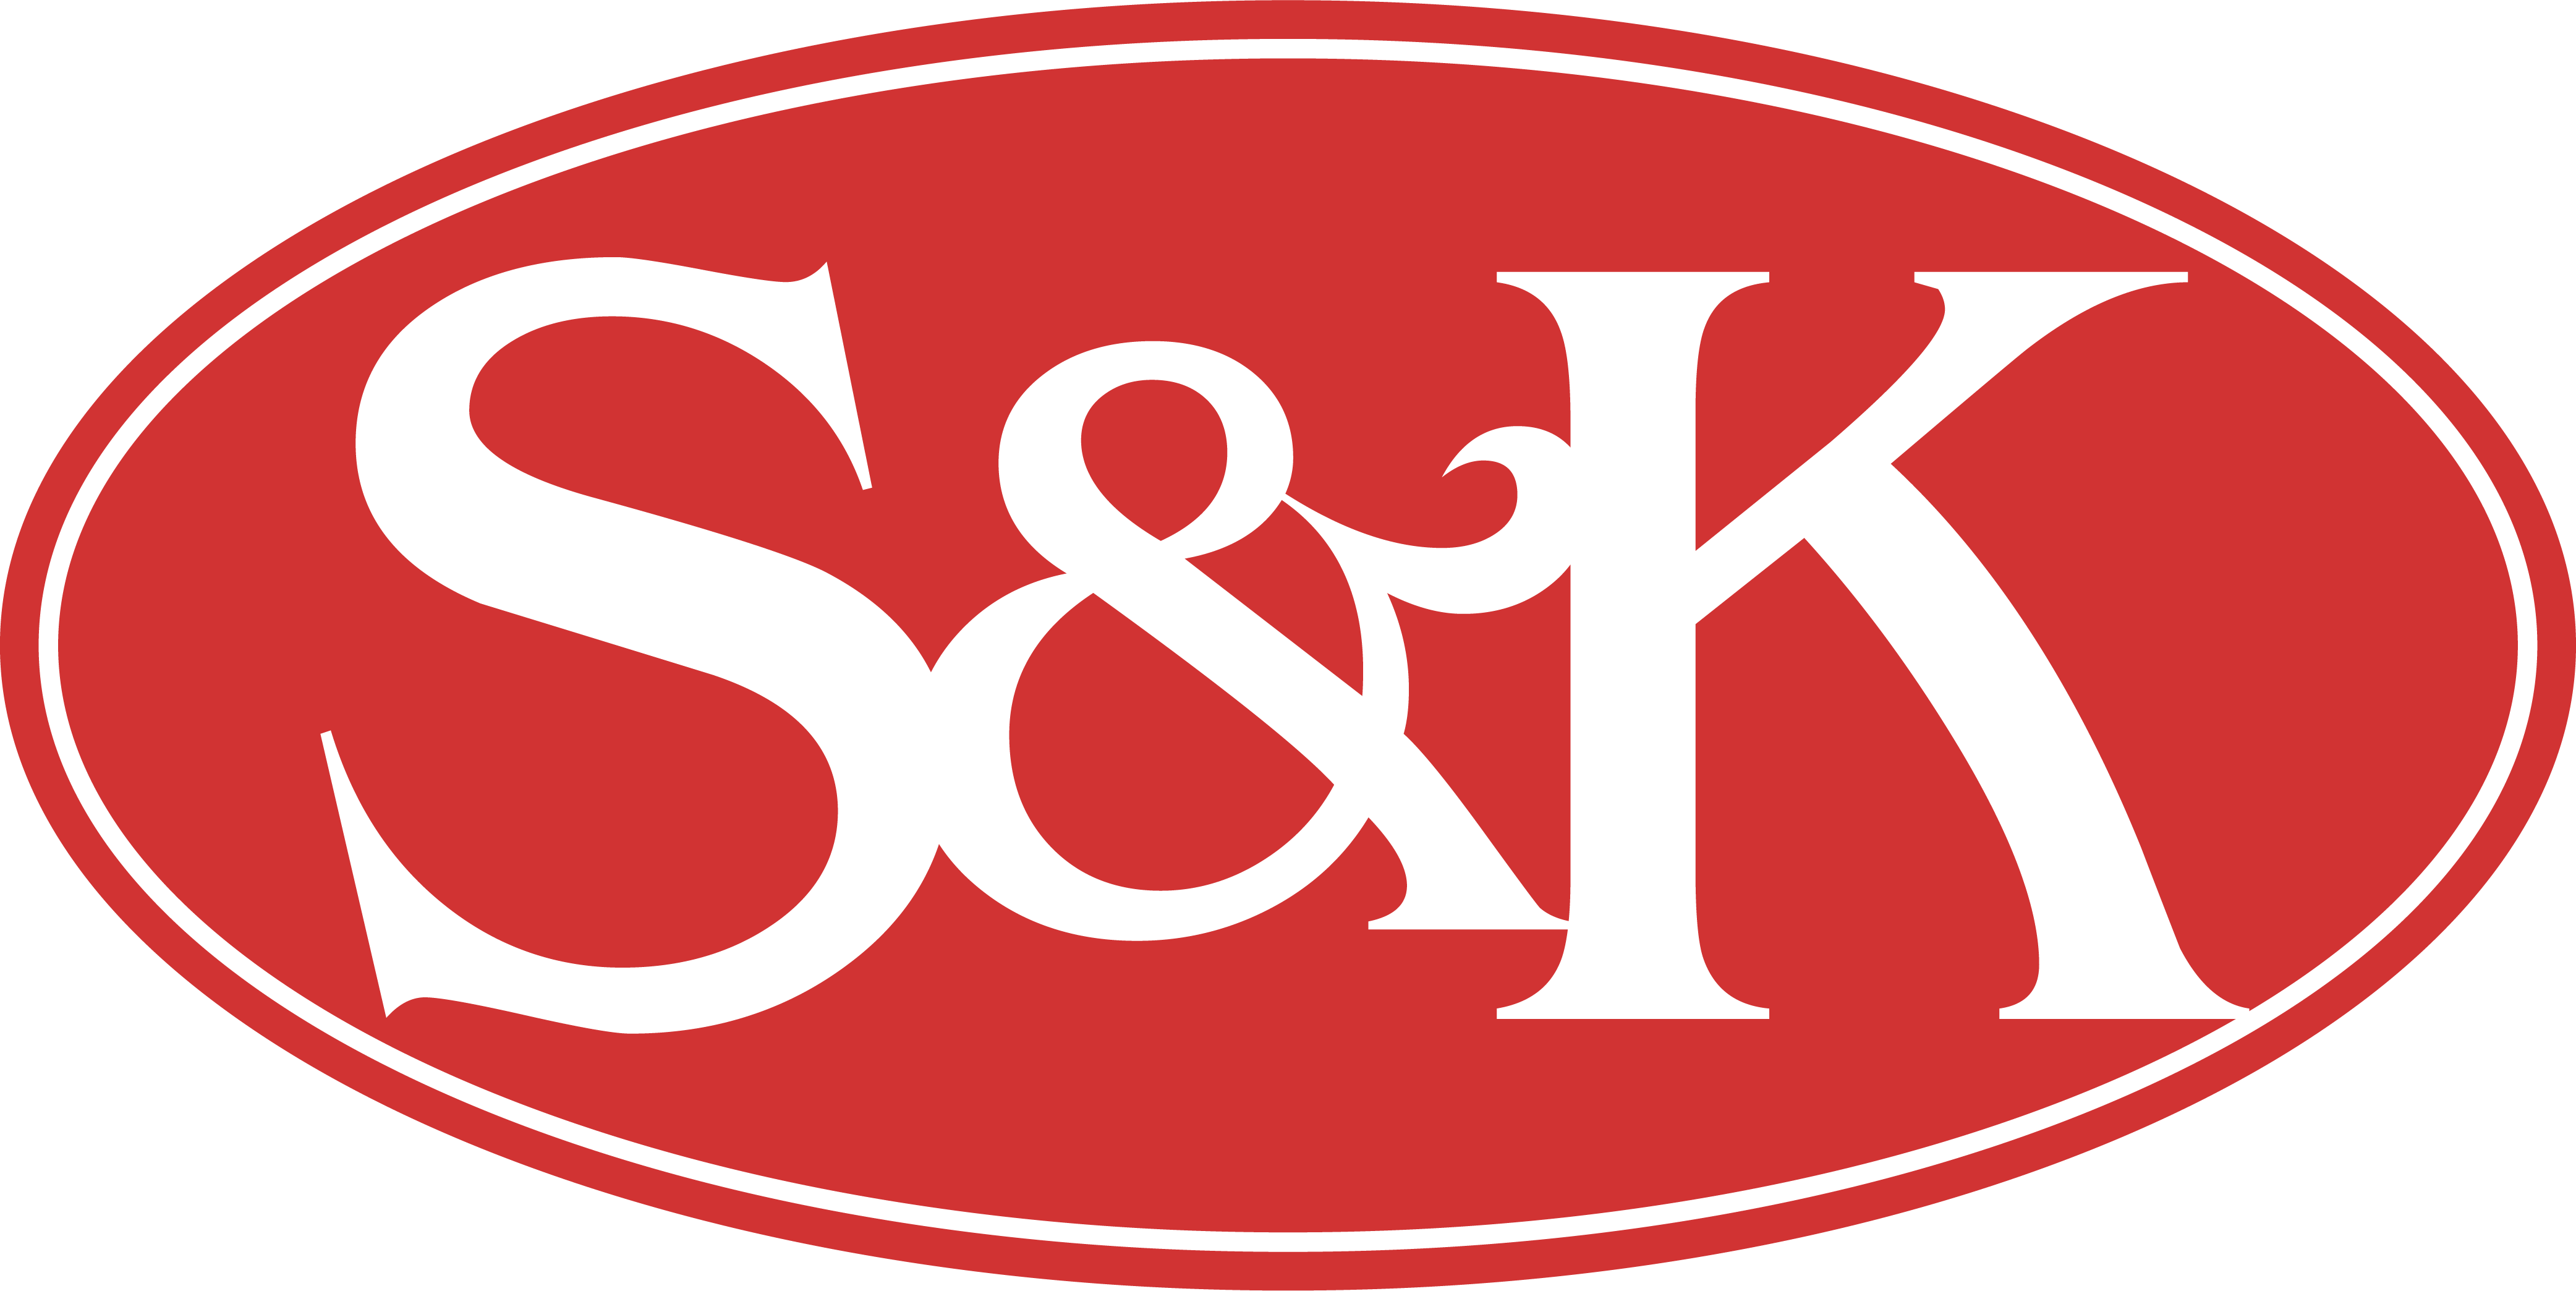 S&K Wiener Saunaessenzen